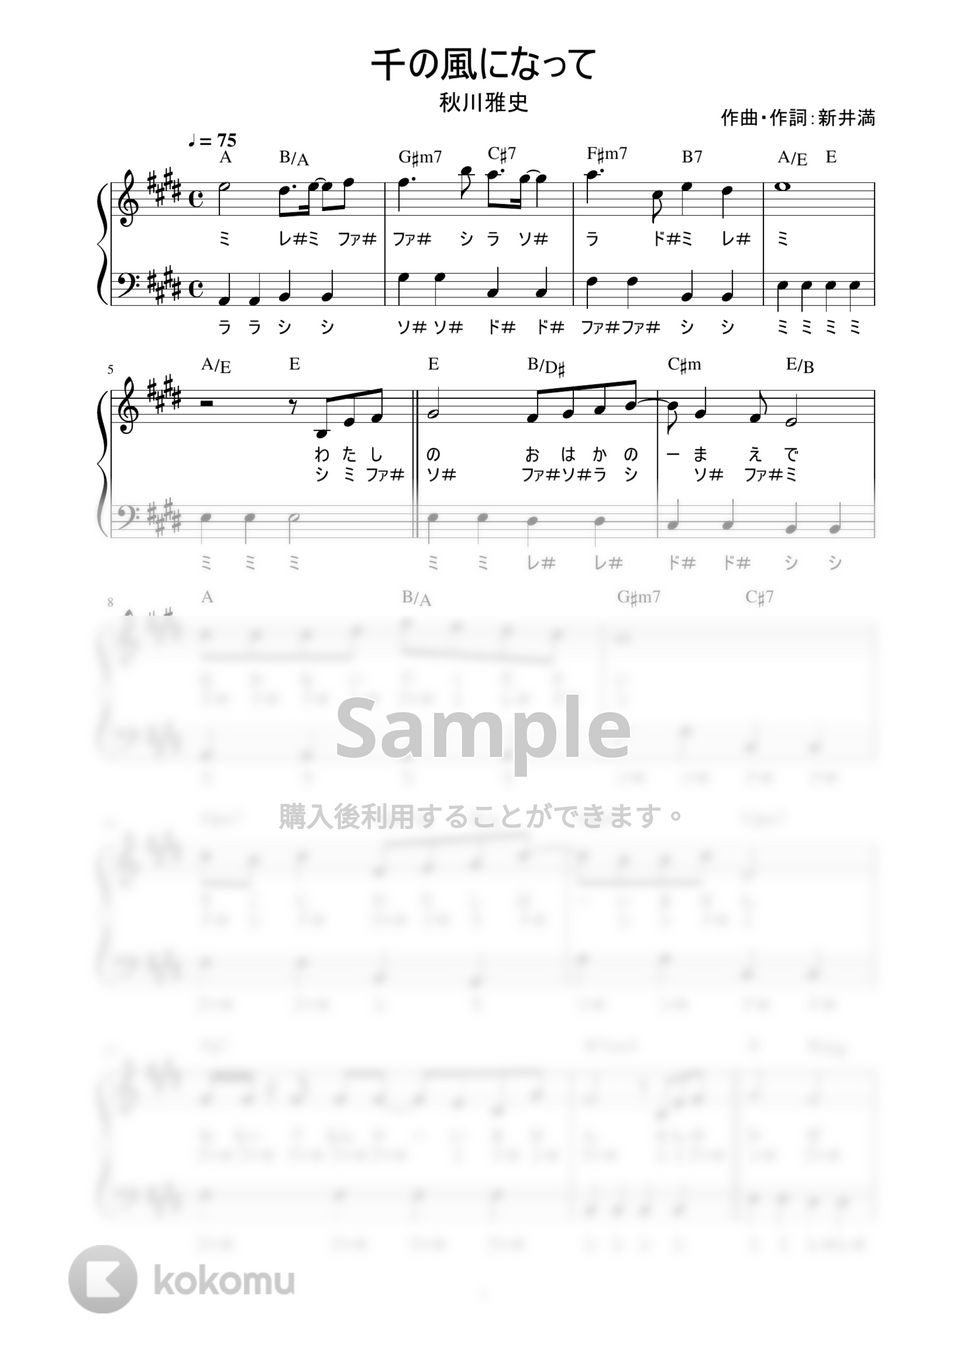 秋川雅史 - 千の風になって (かんたん / 歌詞付き / ドレミ付き / 初心者) by piano.tokyo